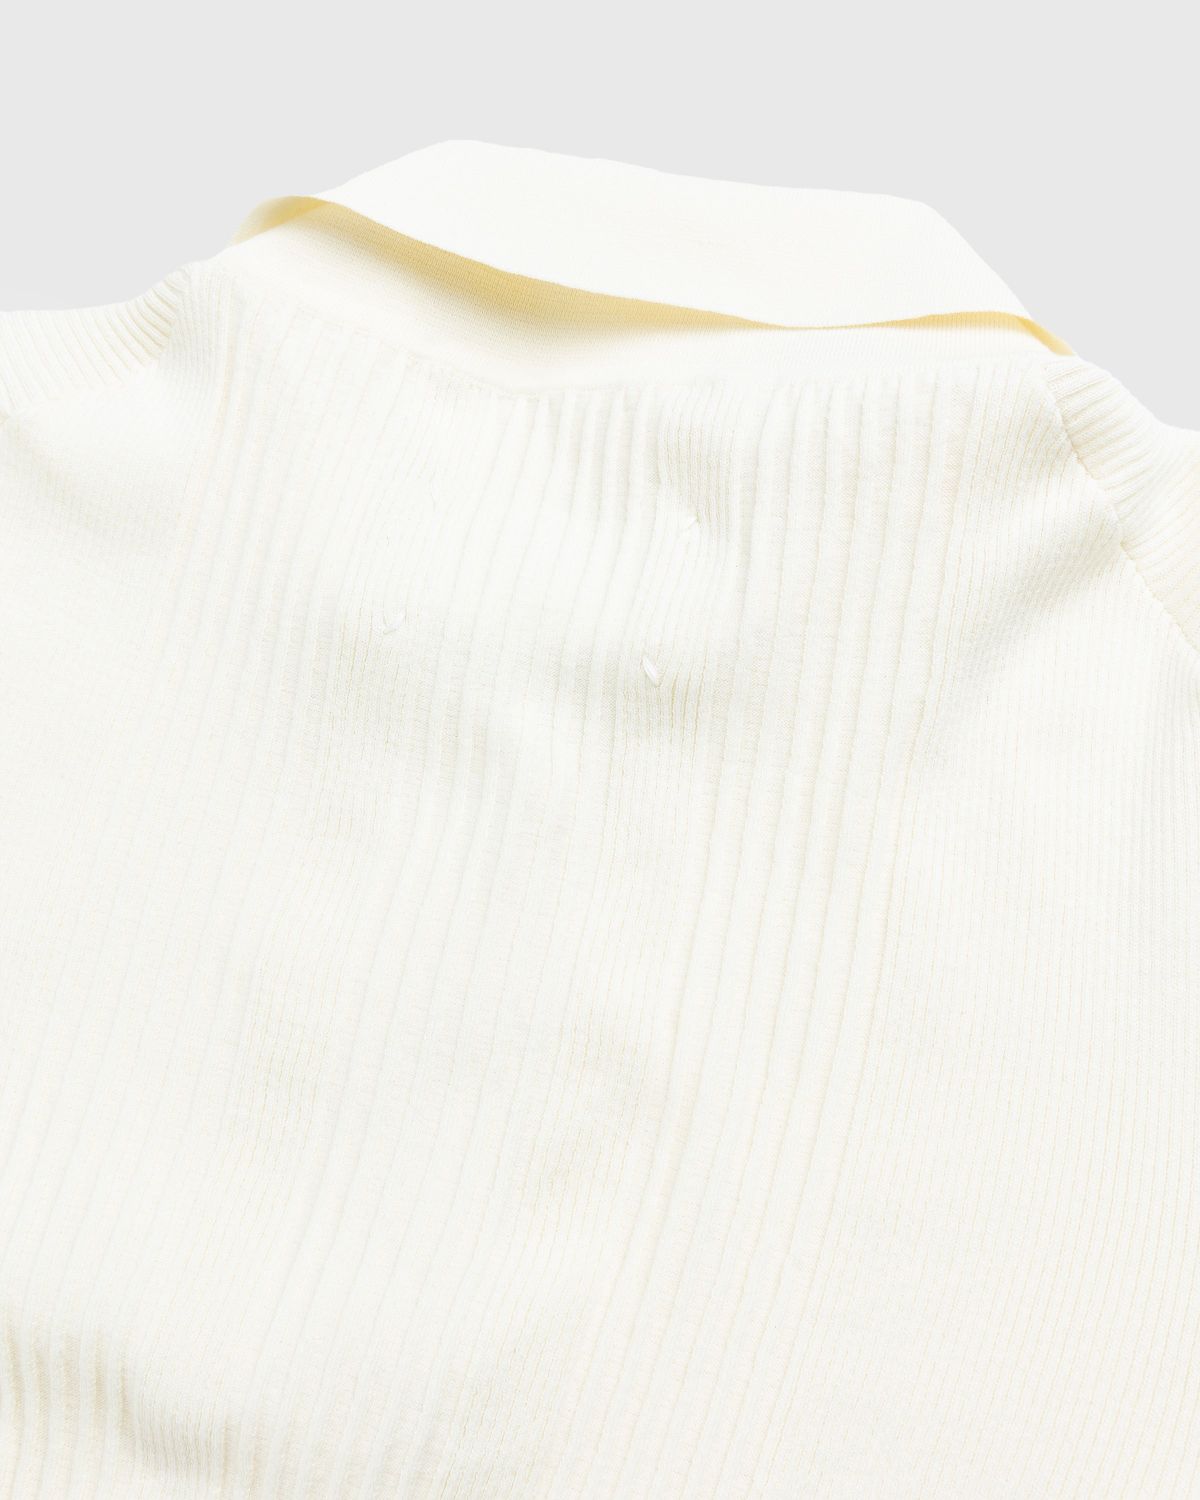 Maison Margiela – Knitted Polo Shirt Beige - Shirts - Beige - Image 5